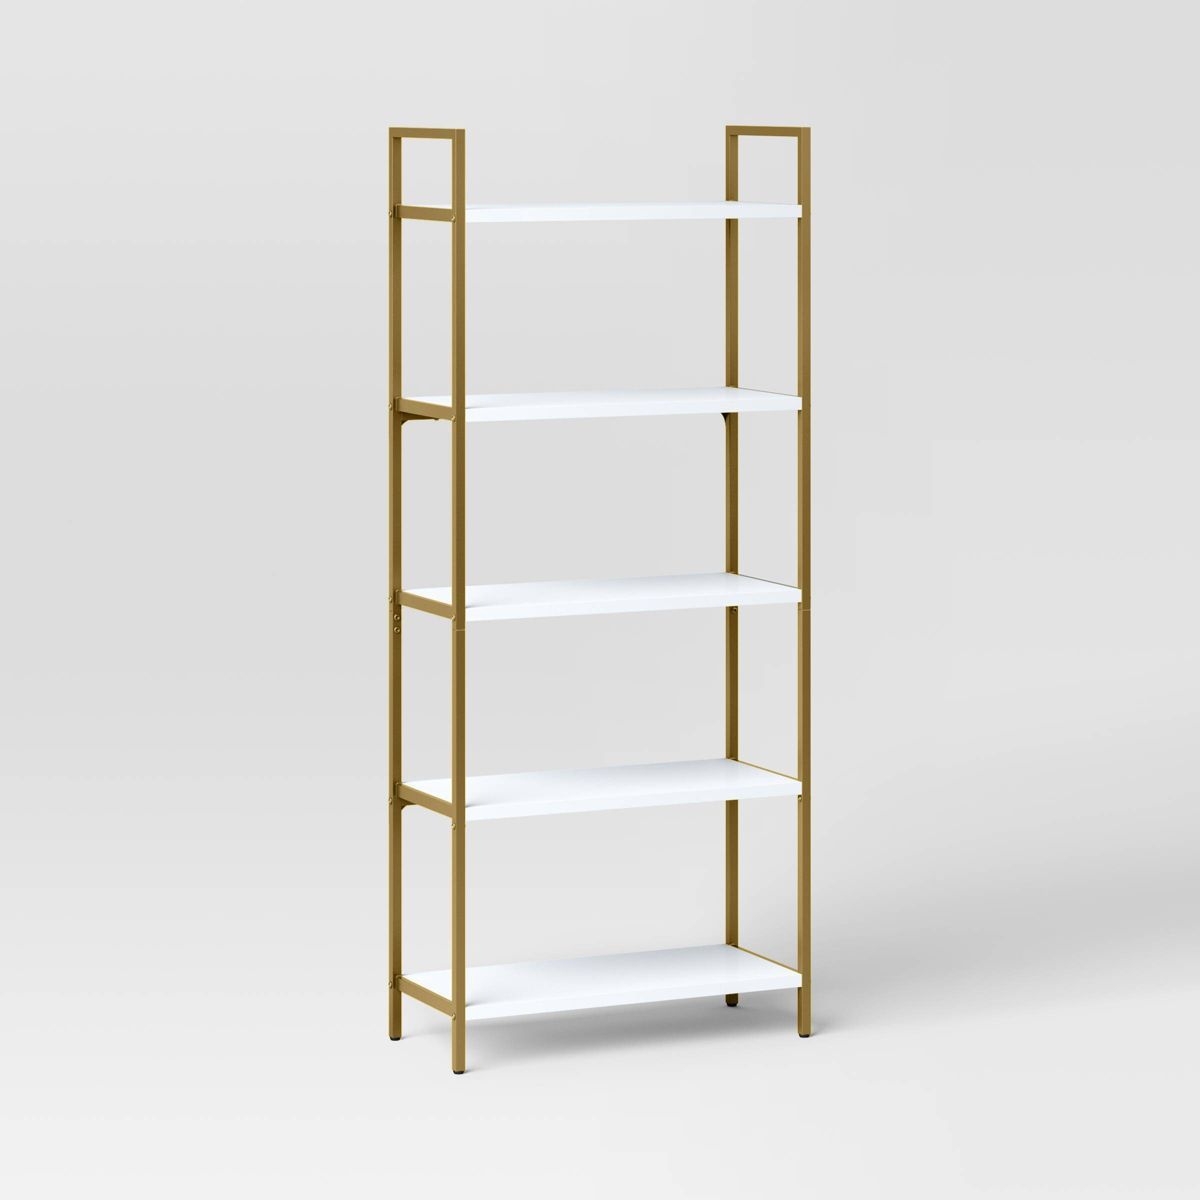 72" Loring 5 Shelf Ladder Bookshelf - Threshold™ | Target